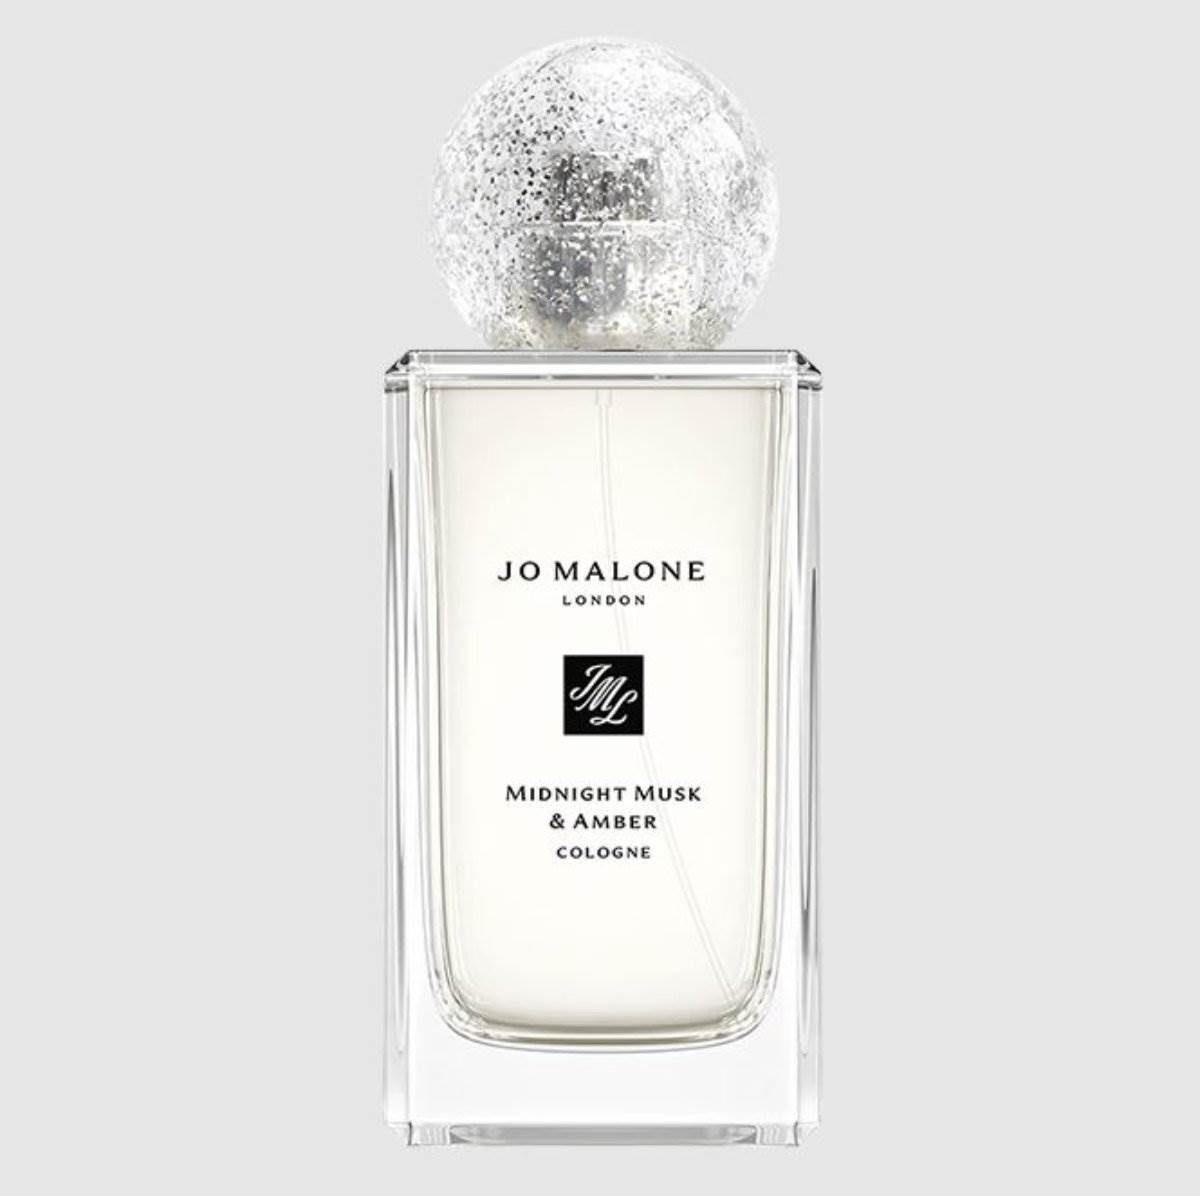  Midnight Musk & Amber Cologne, Jo Malone je nestvaran miris koji ćete obožavati. 